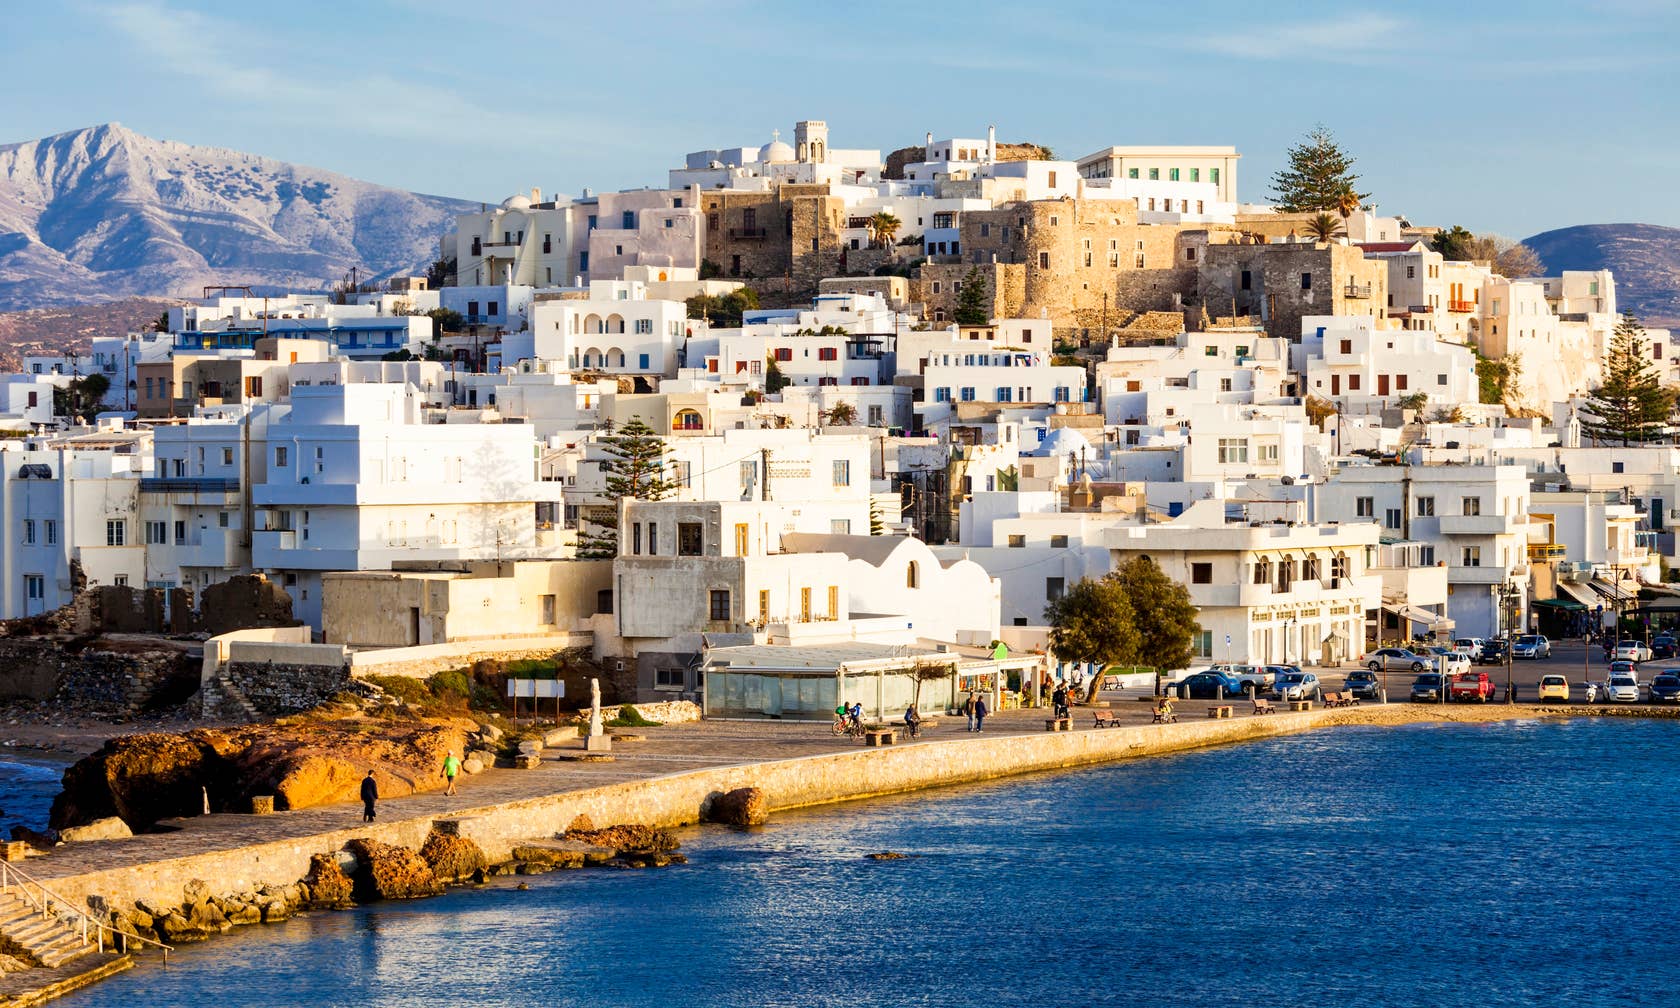 Sewa tempat di Naxos